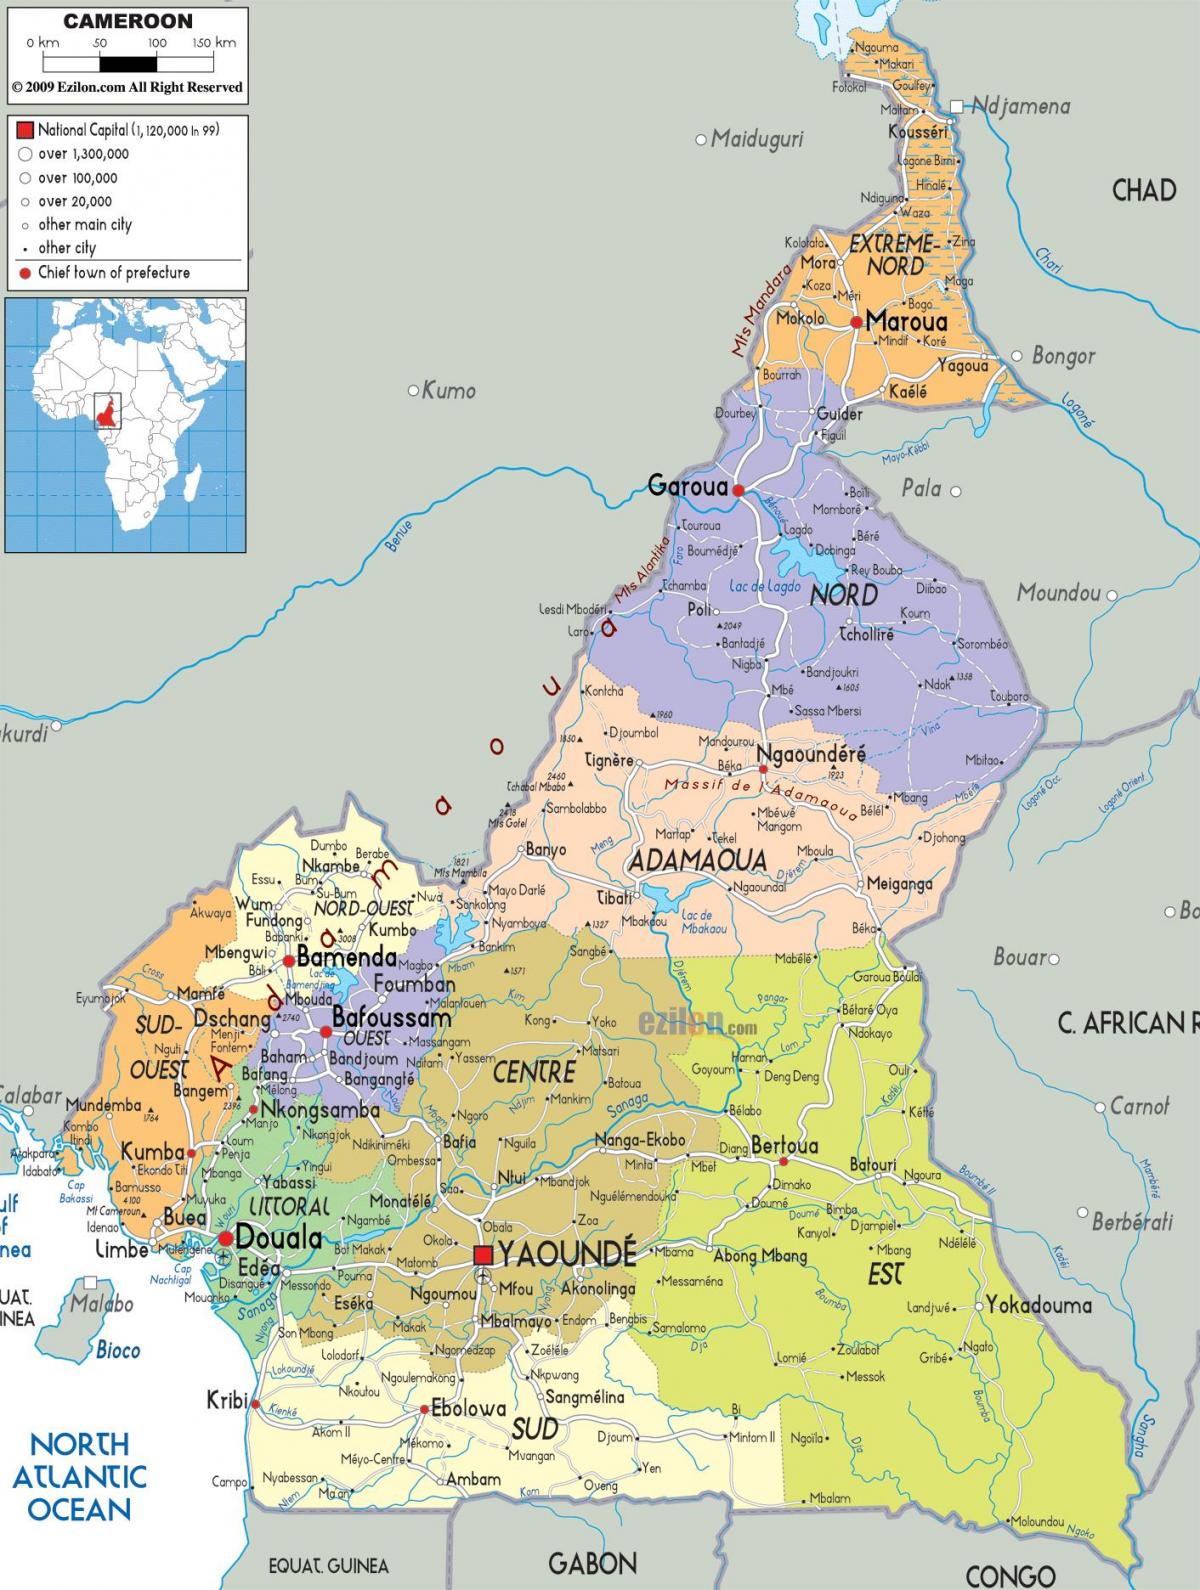 카메룬도 지역